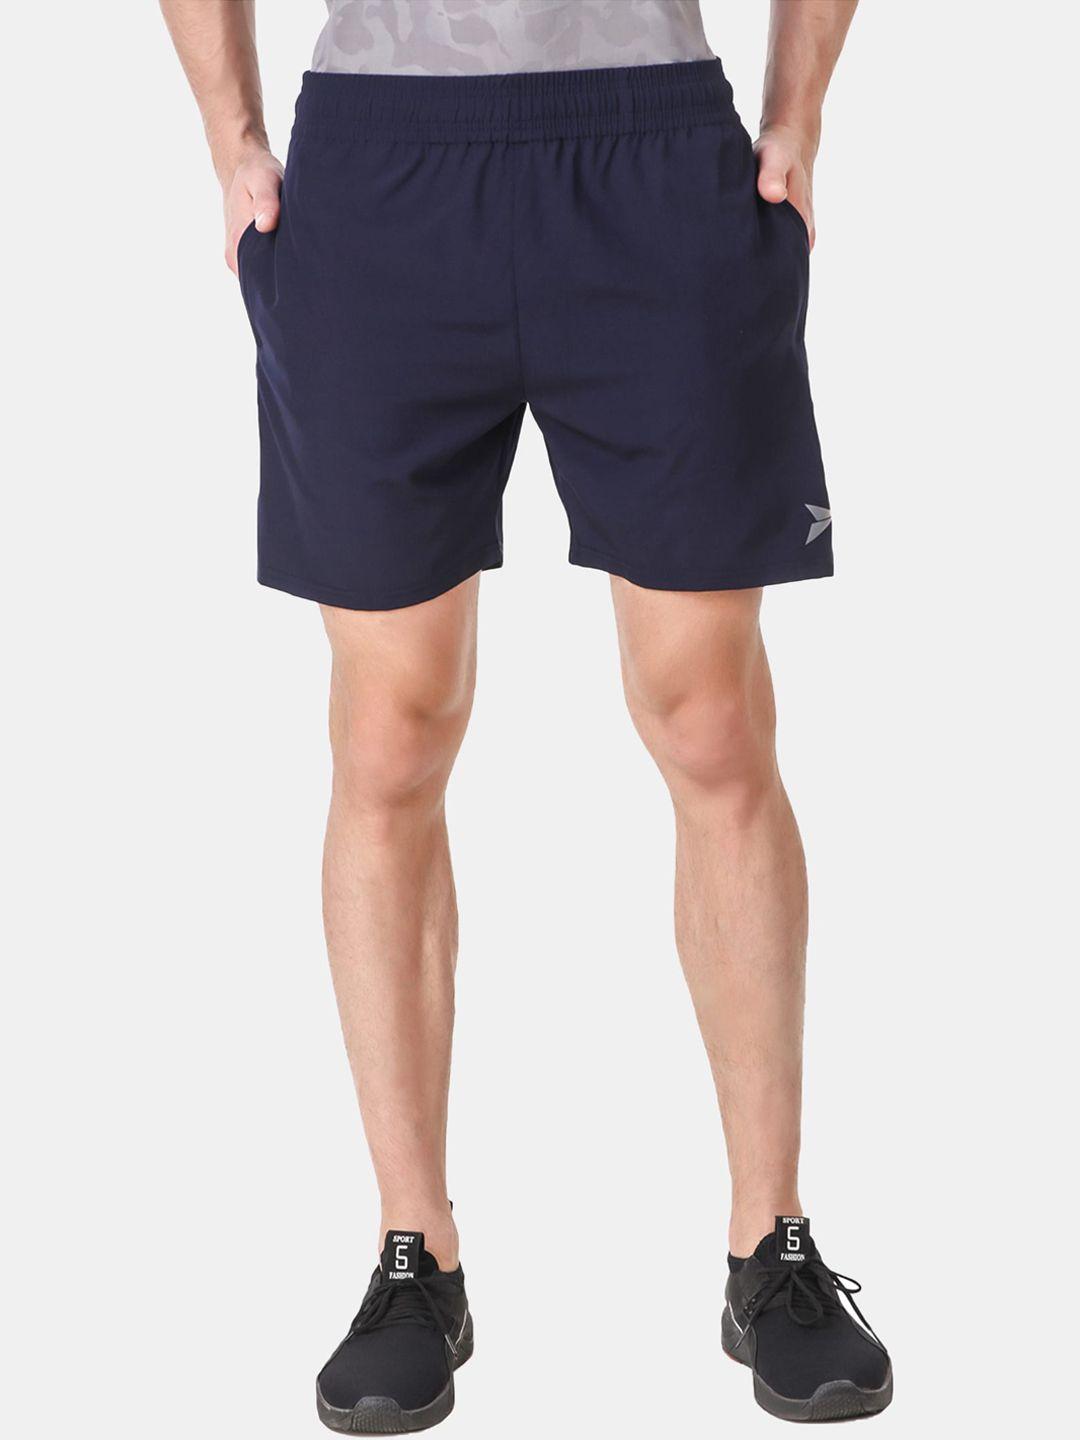 fitinc men navy blue slim fit running biker shorts